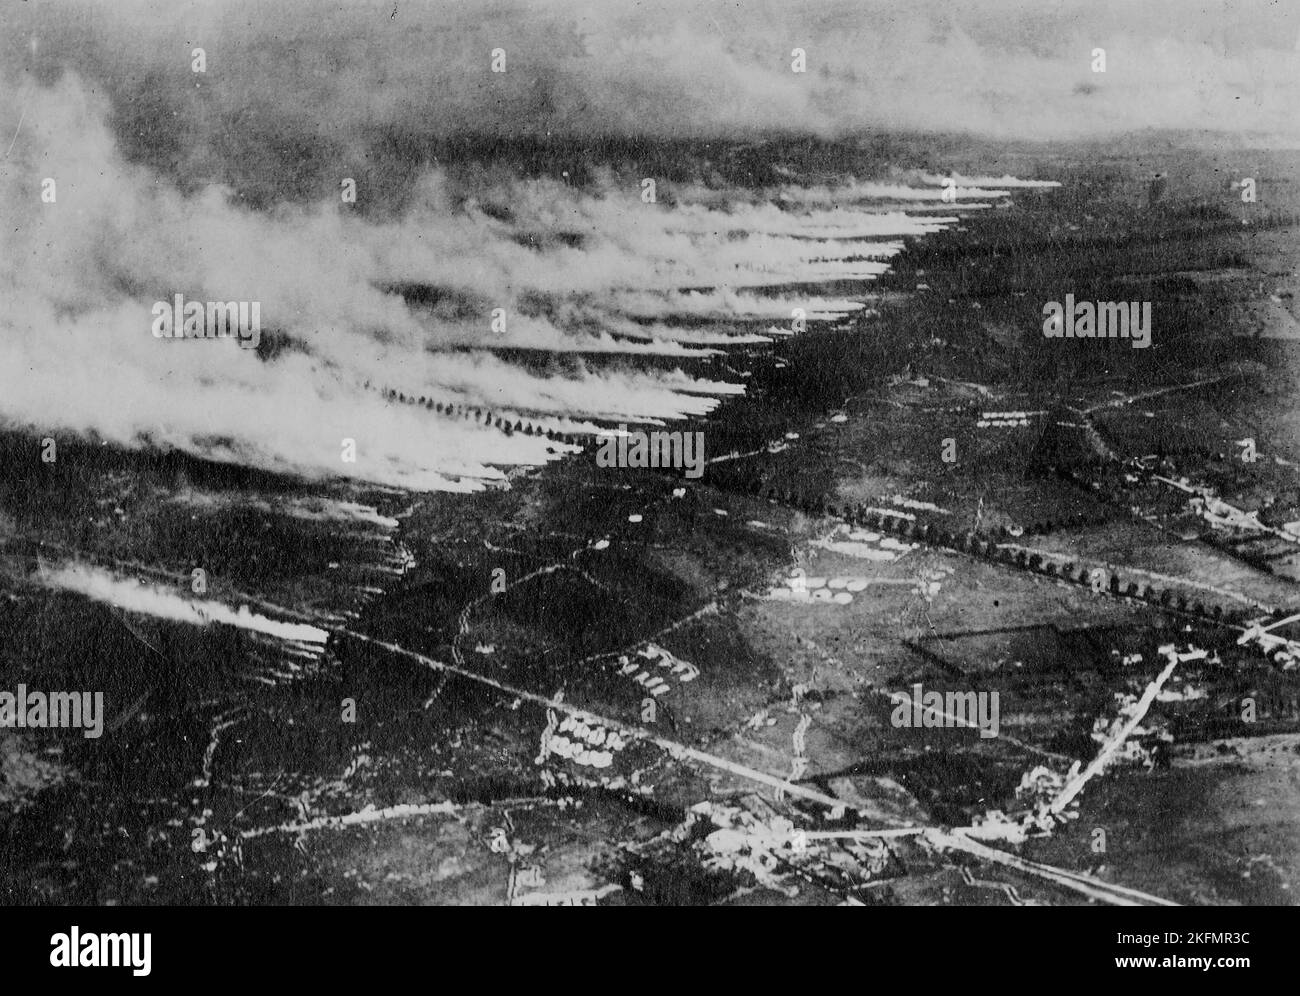 FRENTE OCCIDENTAL, FRANCIA - circa 1915 - Fotografía aérea de un ataque con gas en el campo de batalla de Somme utilizando botes metálicos de gas líquido. Cuando el recipiente Foto de stock